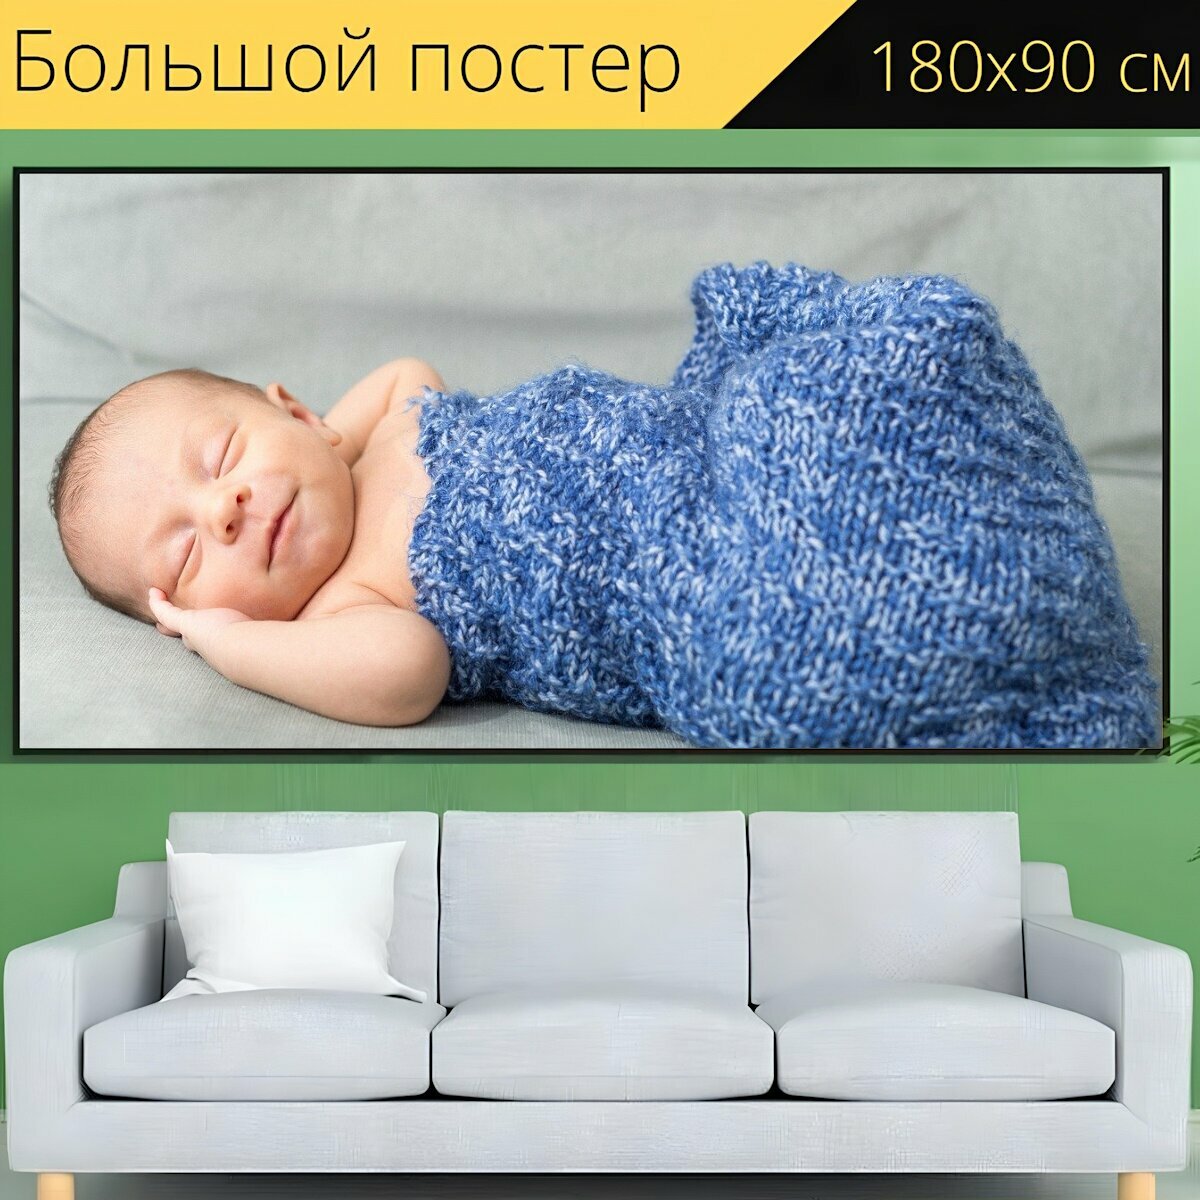 Большой постер "Детка, новорожденный, пеленать" 180 x 90 см. для интерьера